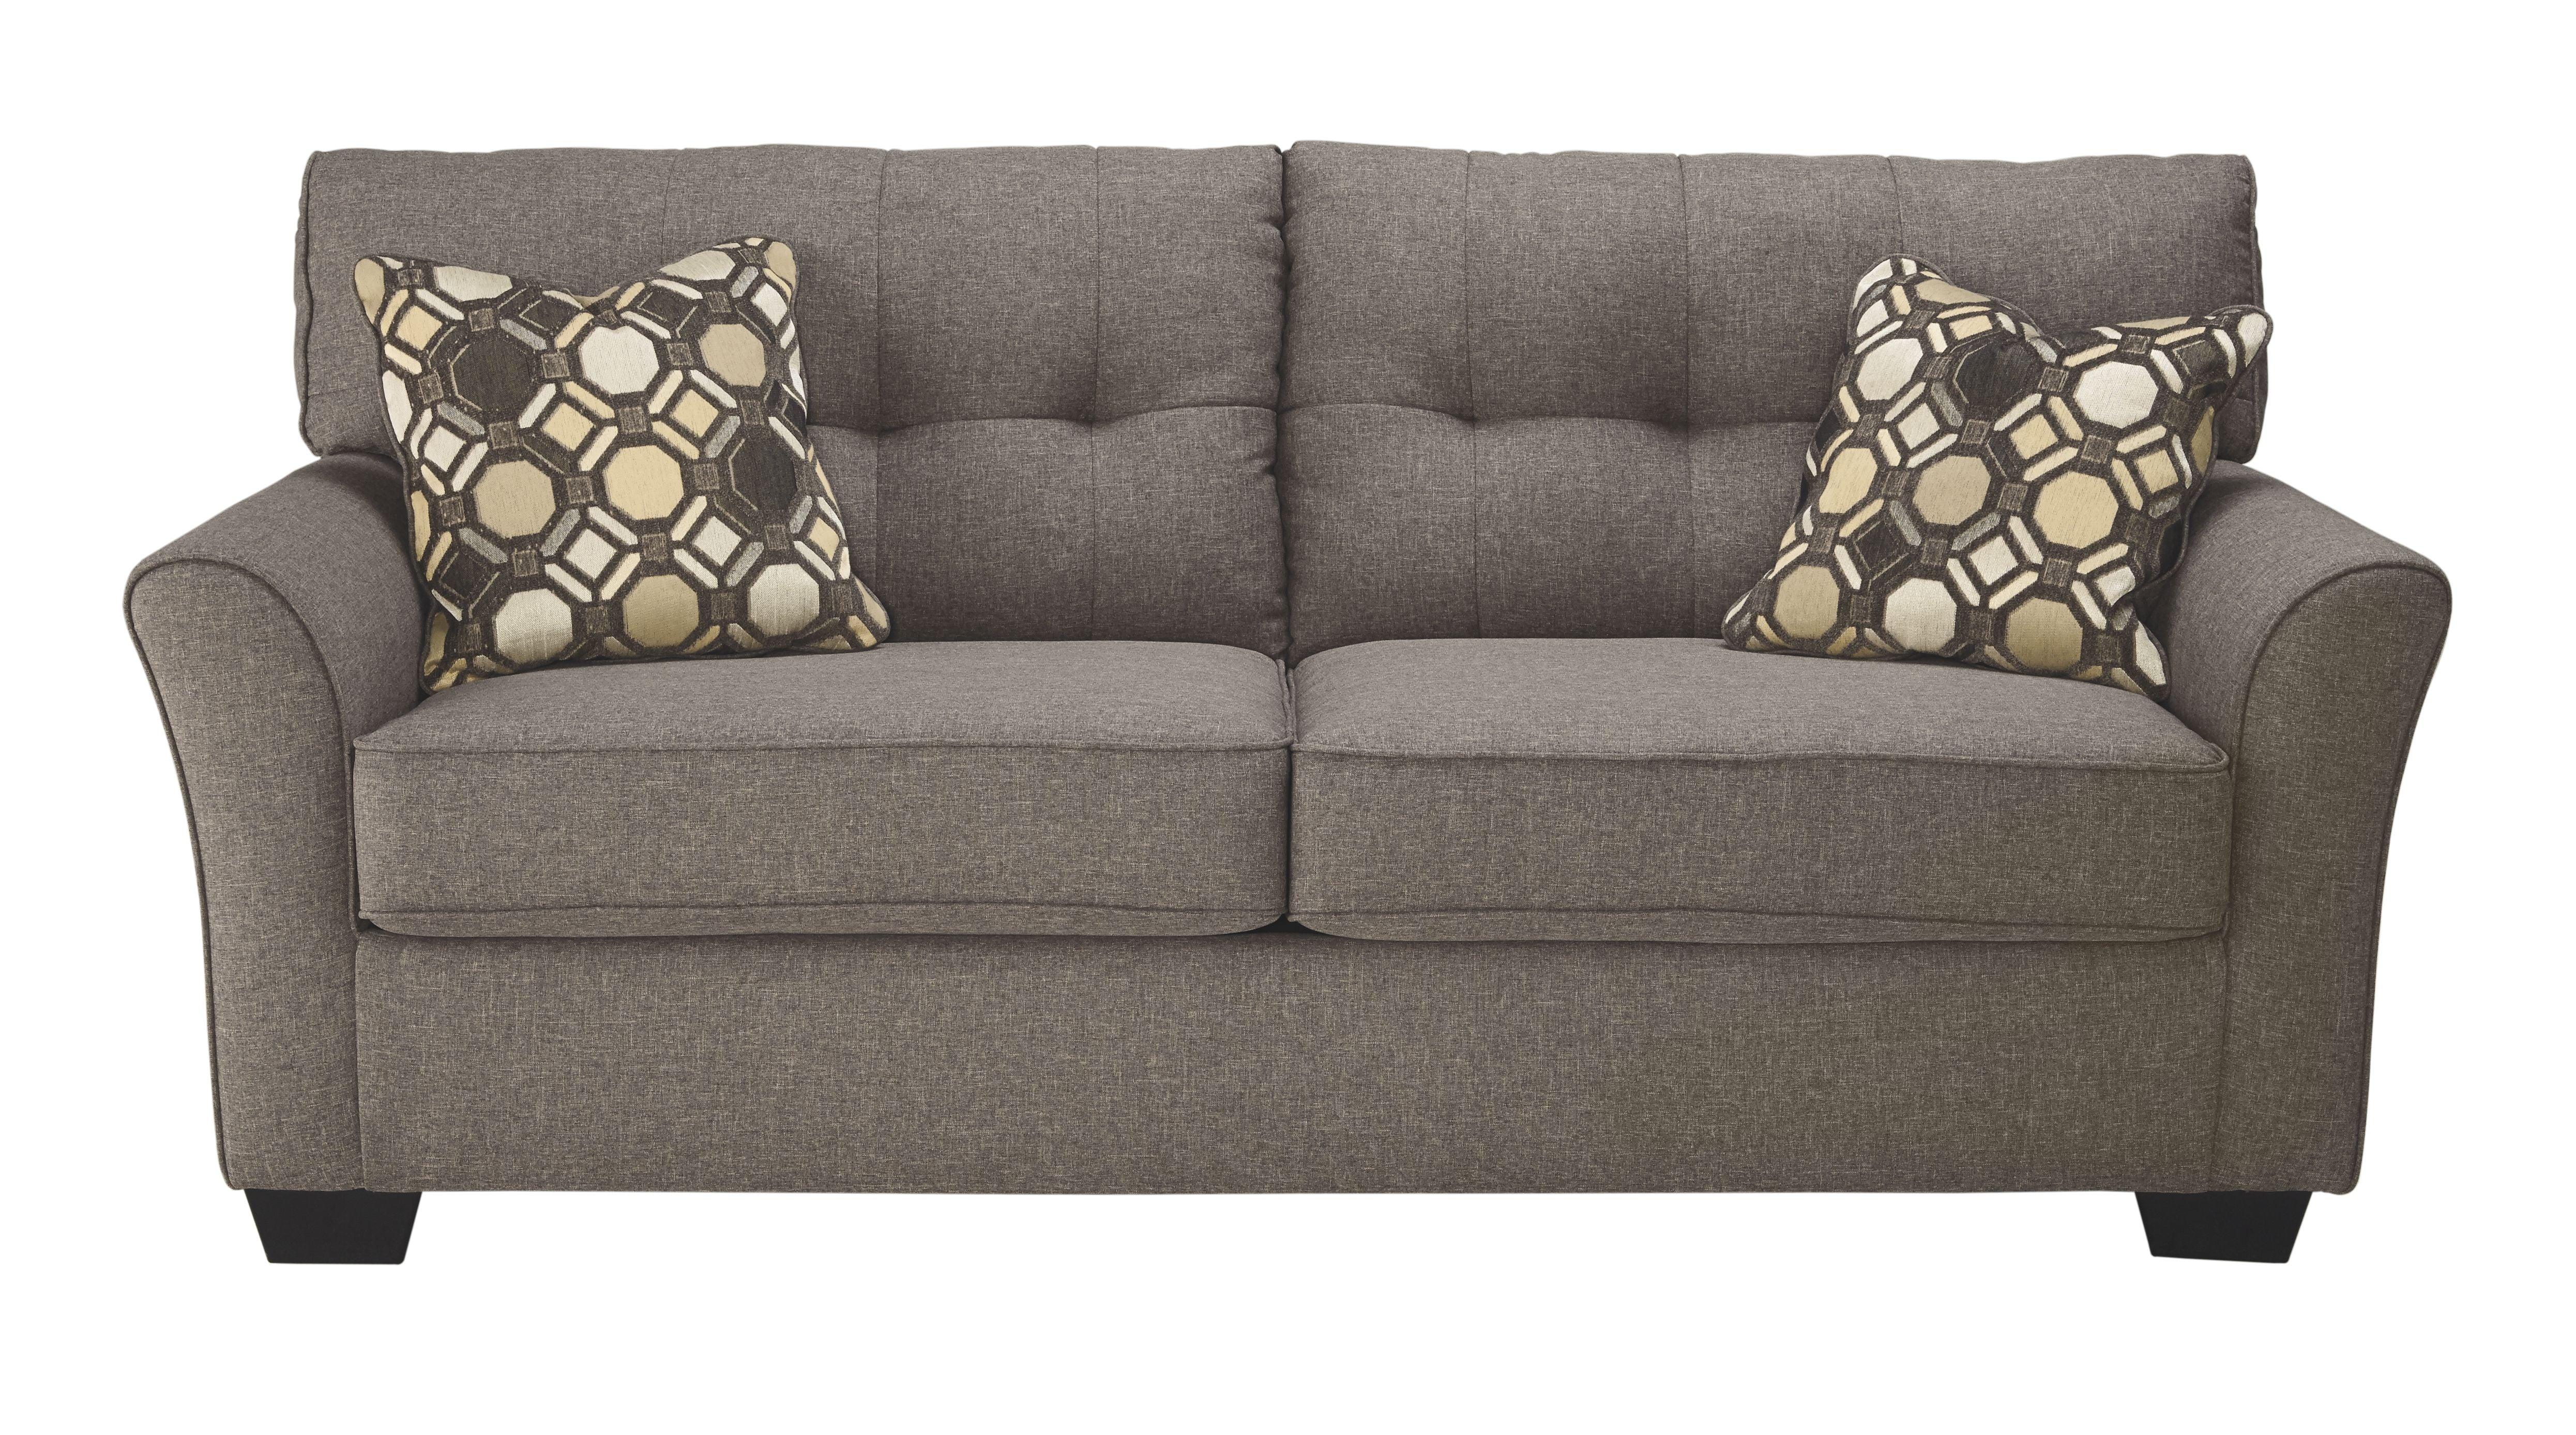 Ashley Furniture - Tibbee - Slate - Sofa - 5th Avenue Furniture